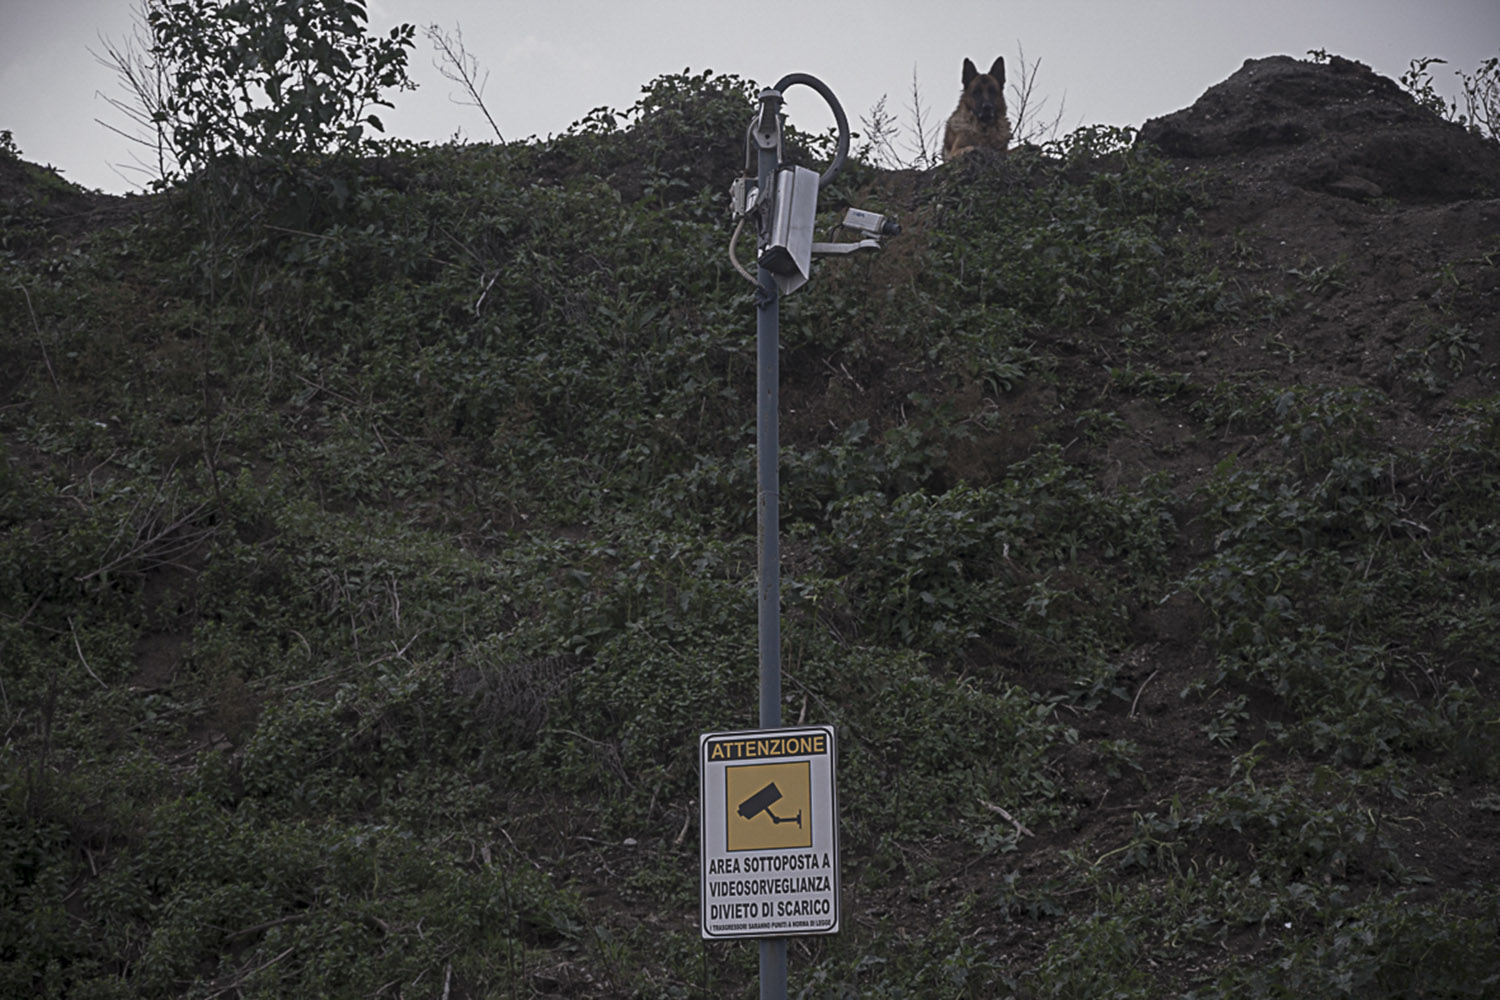  Pianura, Napoli, 2017. Una delle tante videocamere di sorveglianza danneggiate presenti sulla strada che conduce al cratere Senga. 